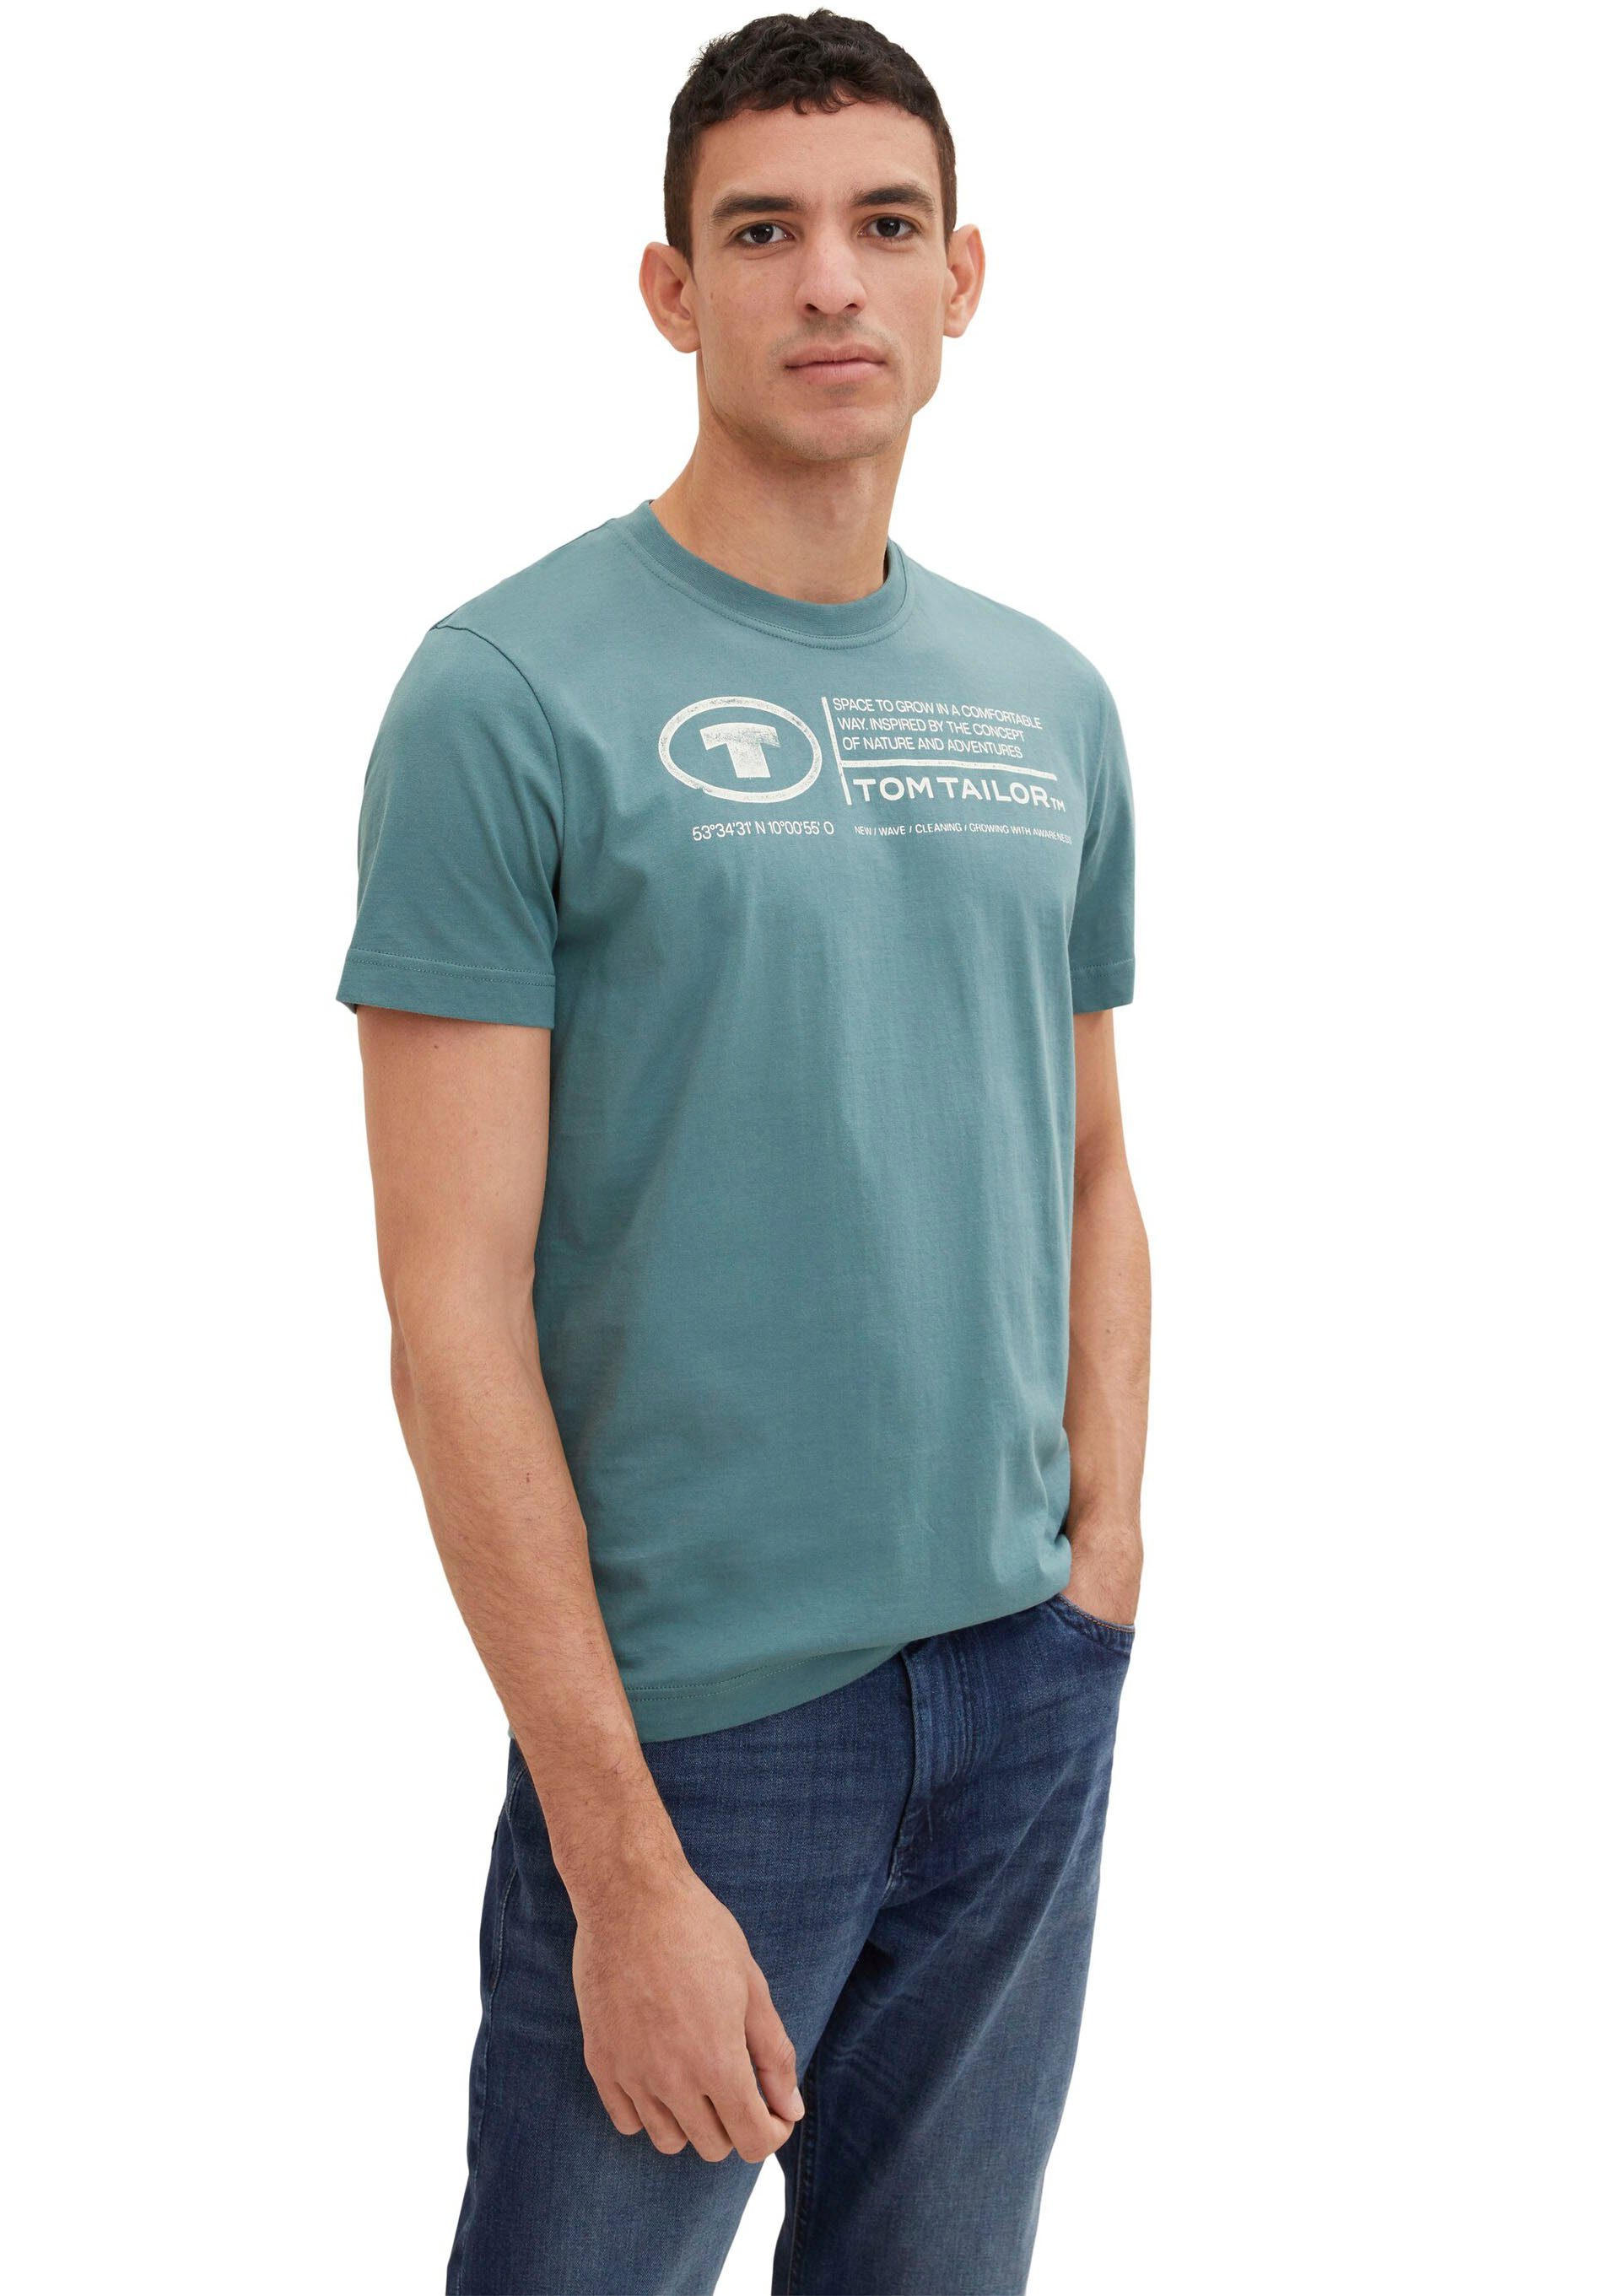 Frontprint Herren Tailor TOM deep T-Shirt Tom Print-Shirt TAILOR bluis